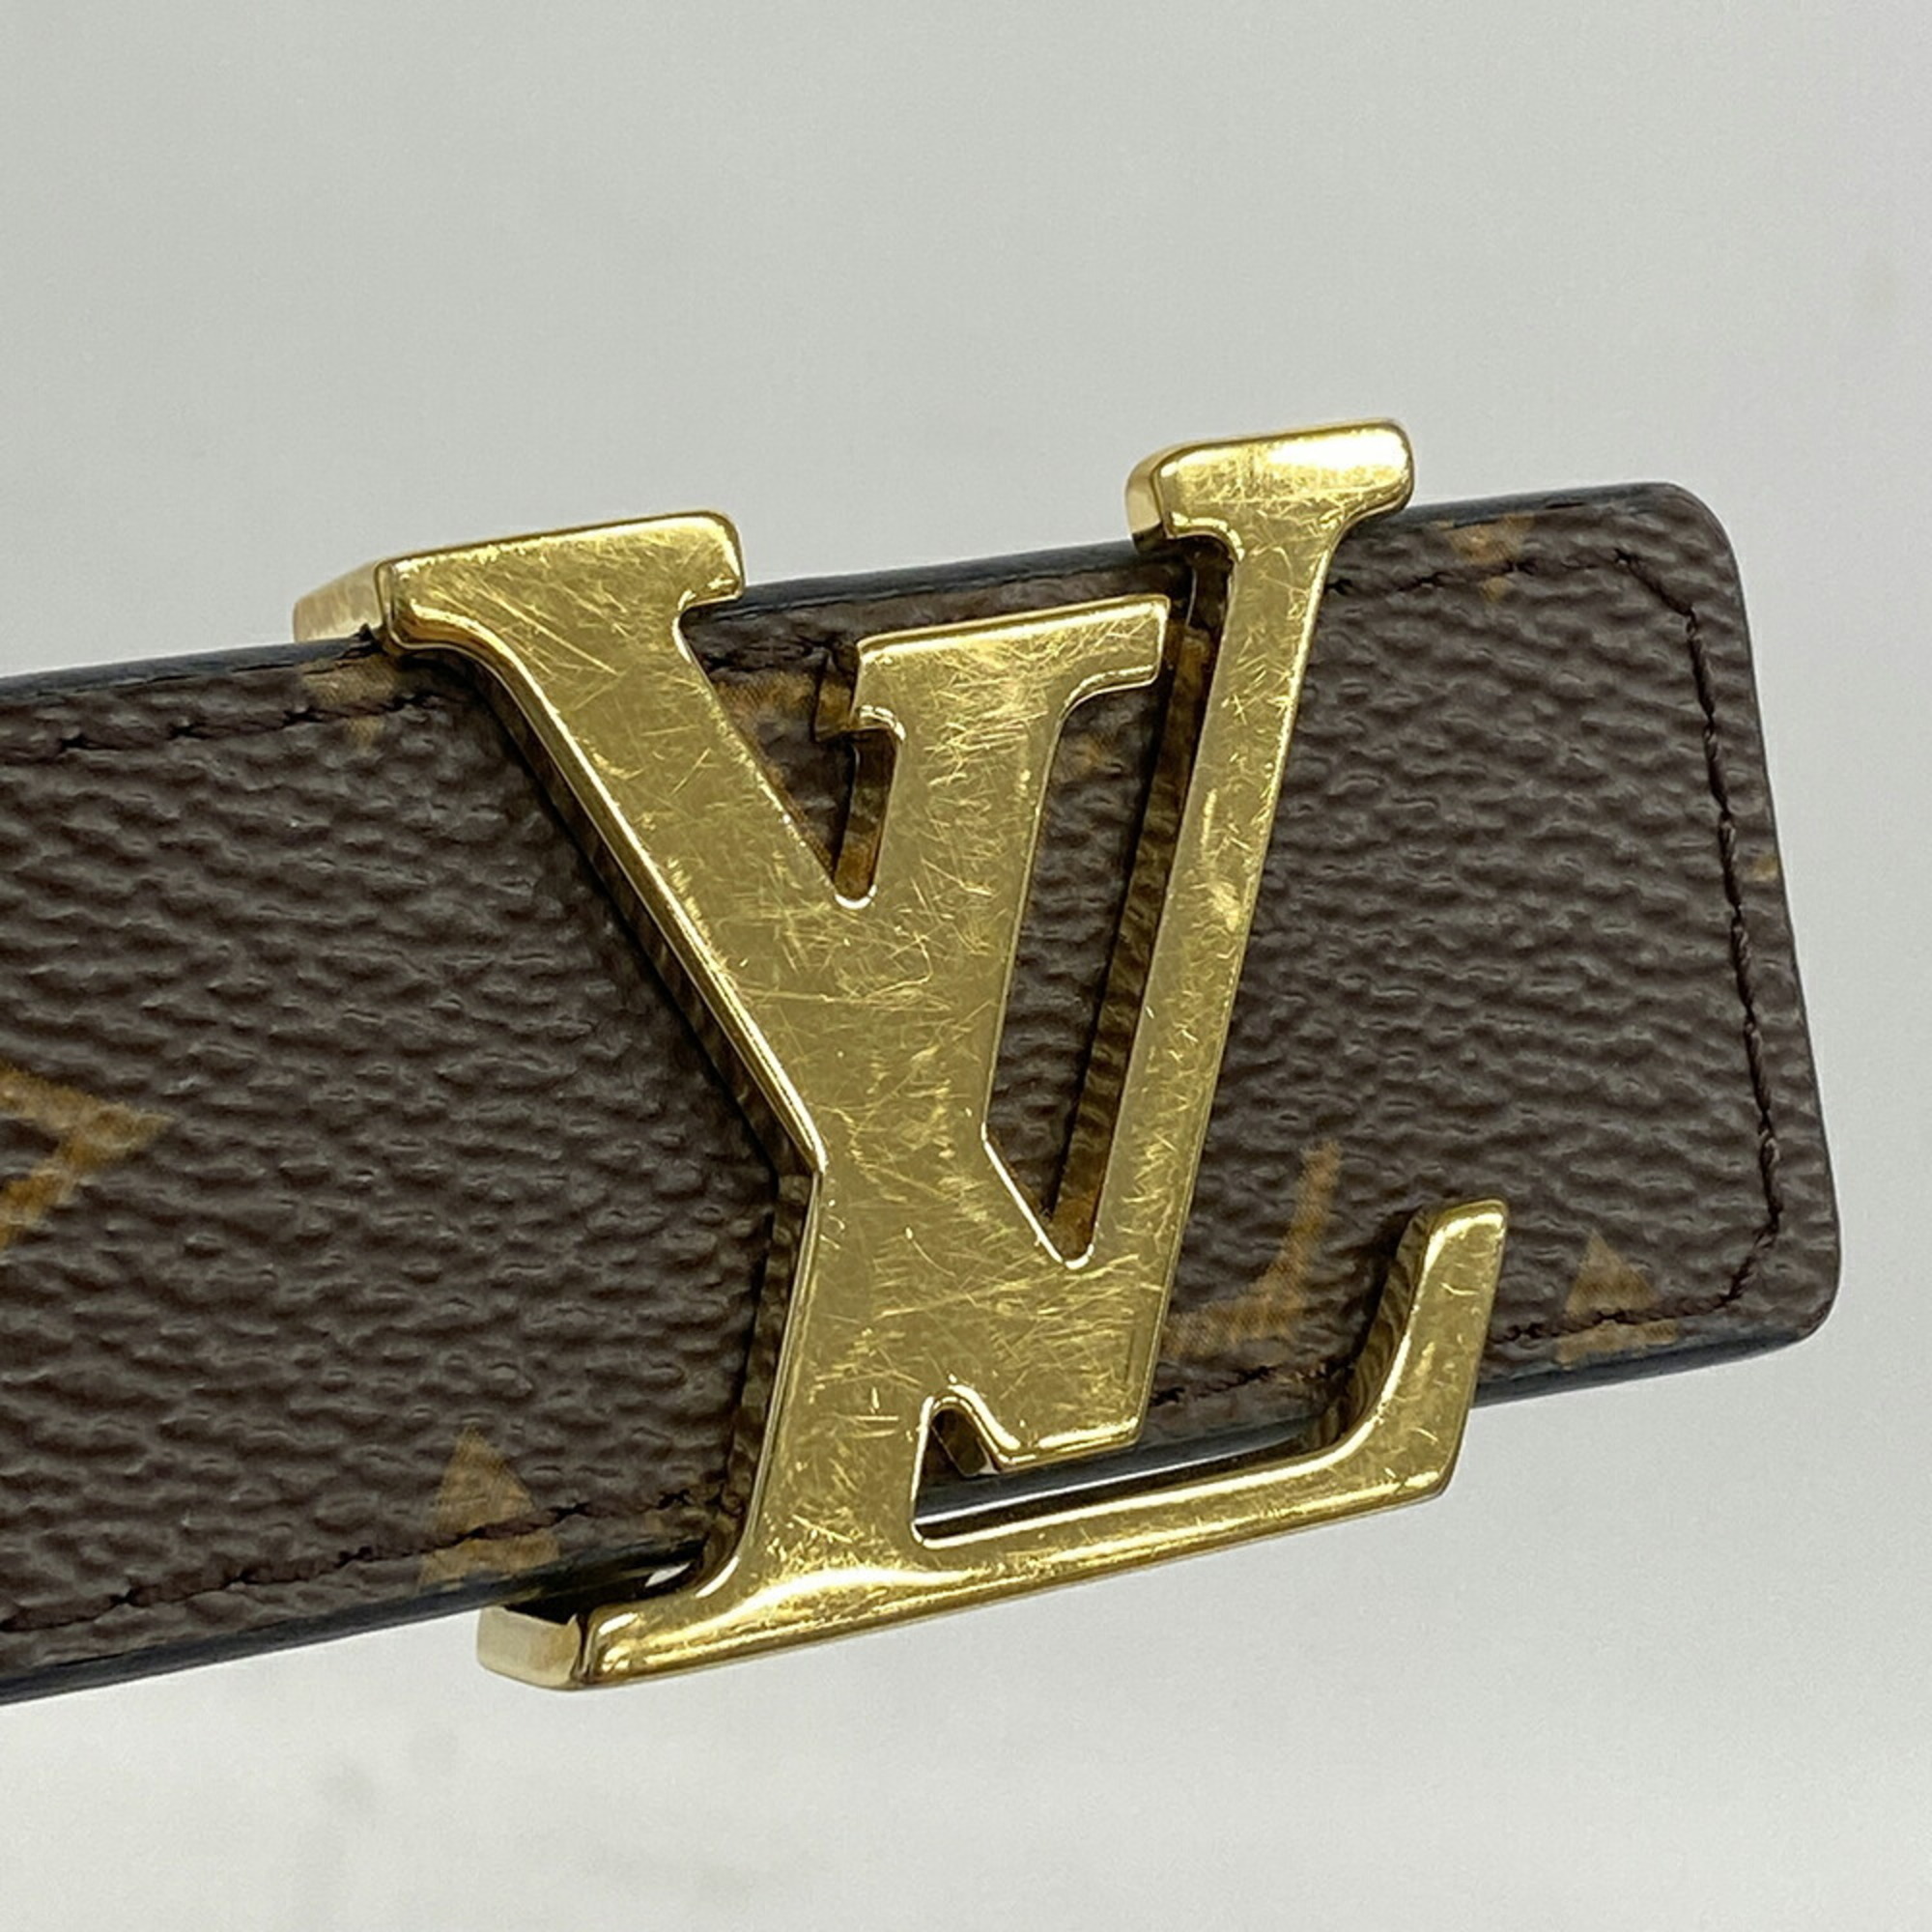 ルイ・ヴィトン(Louis Vuitton) ルイ・ヴィトン ベルト モノグラム サンチュールLVイニシャル M9453 ブラウンレディース